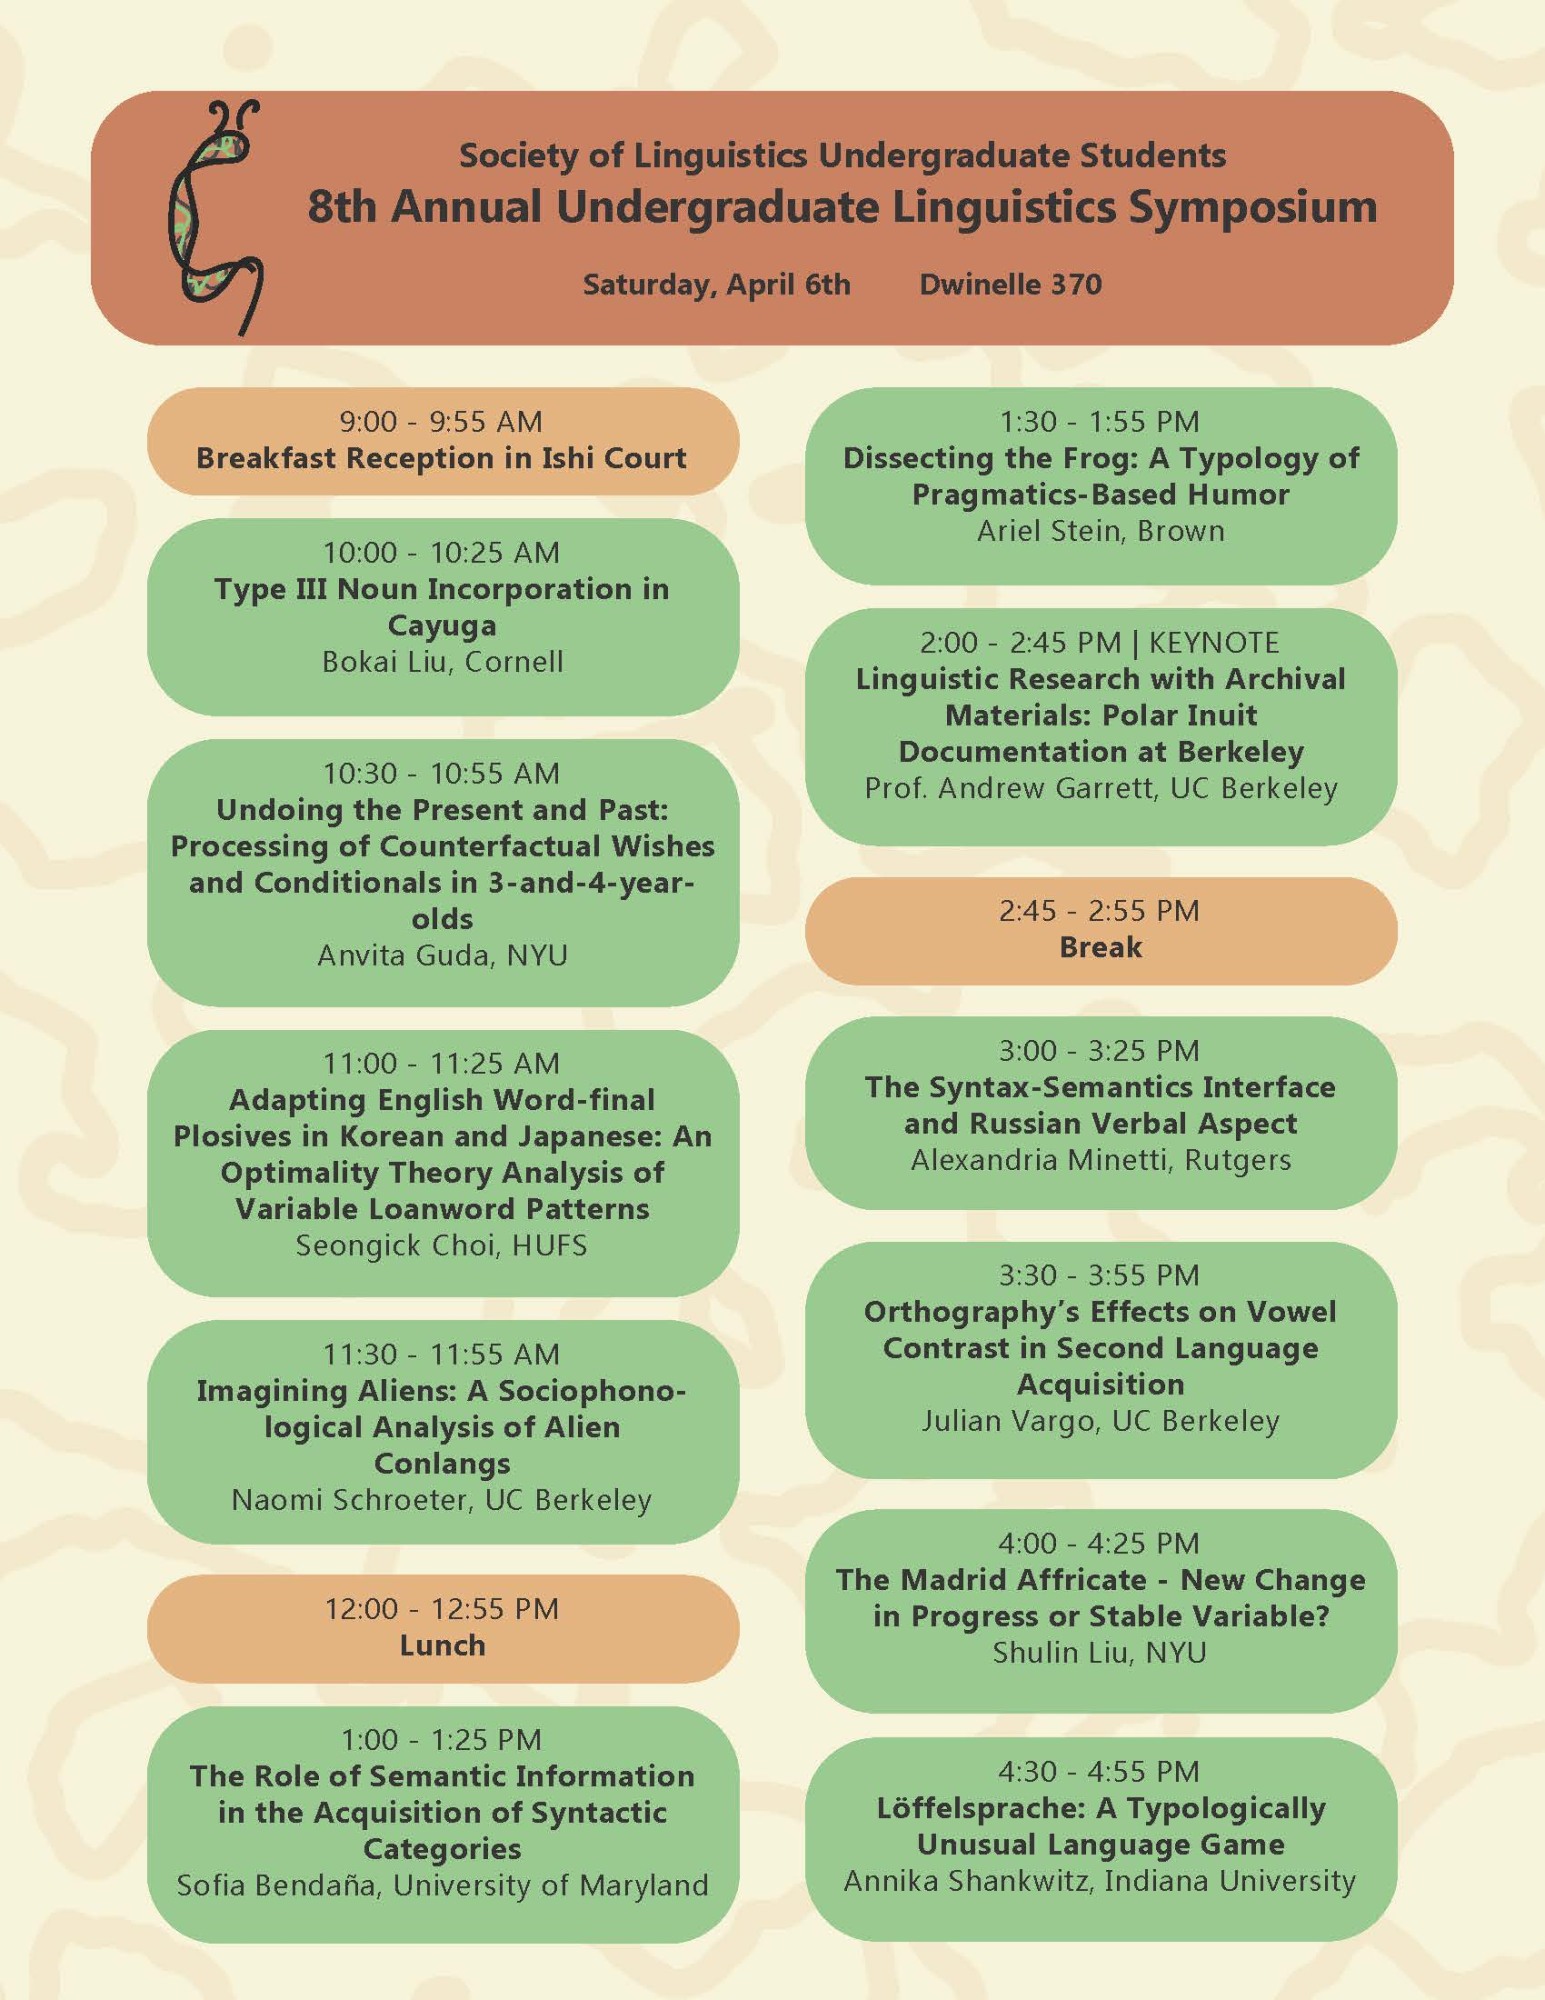 The 8th Annual Berkeley Undergraduate Linguistics Symposium